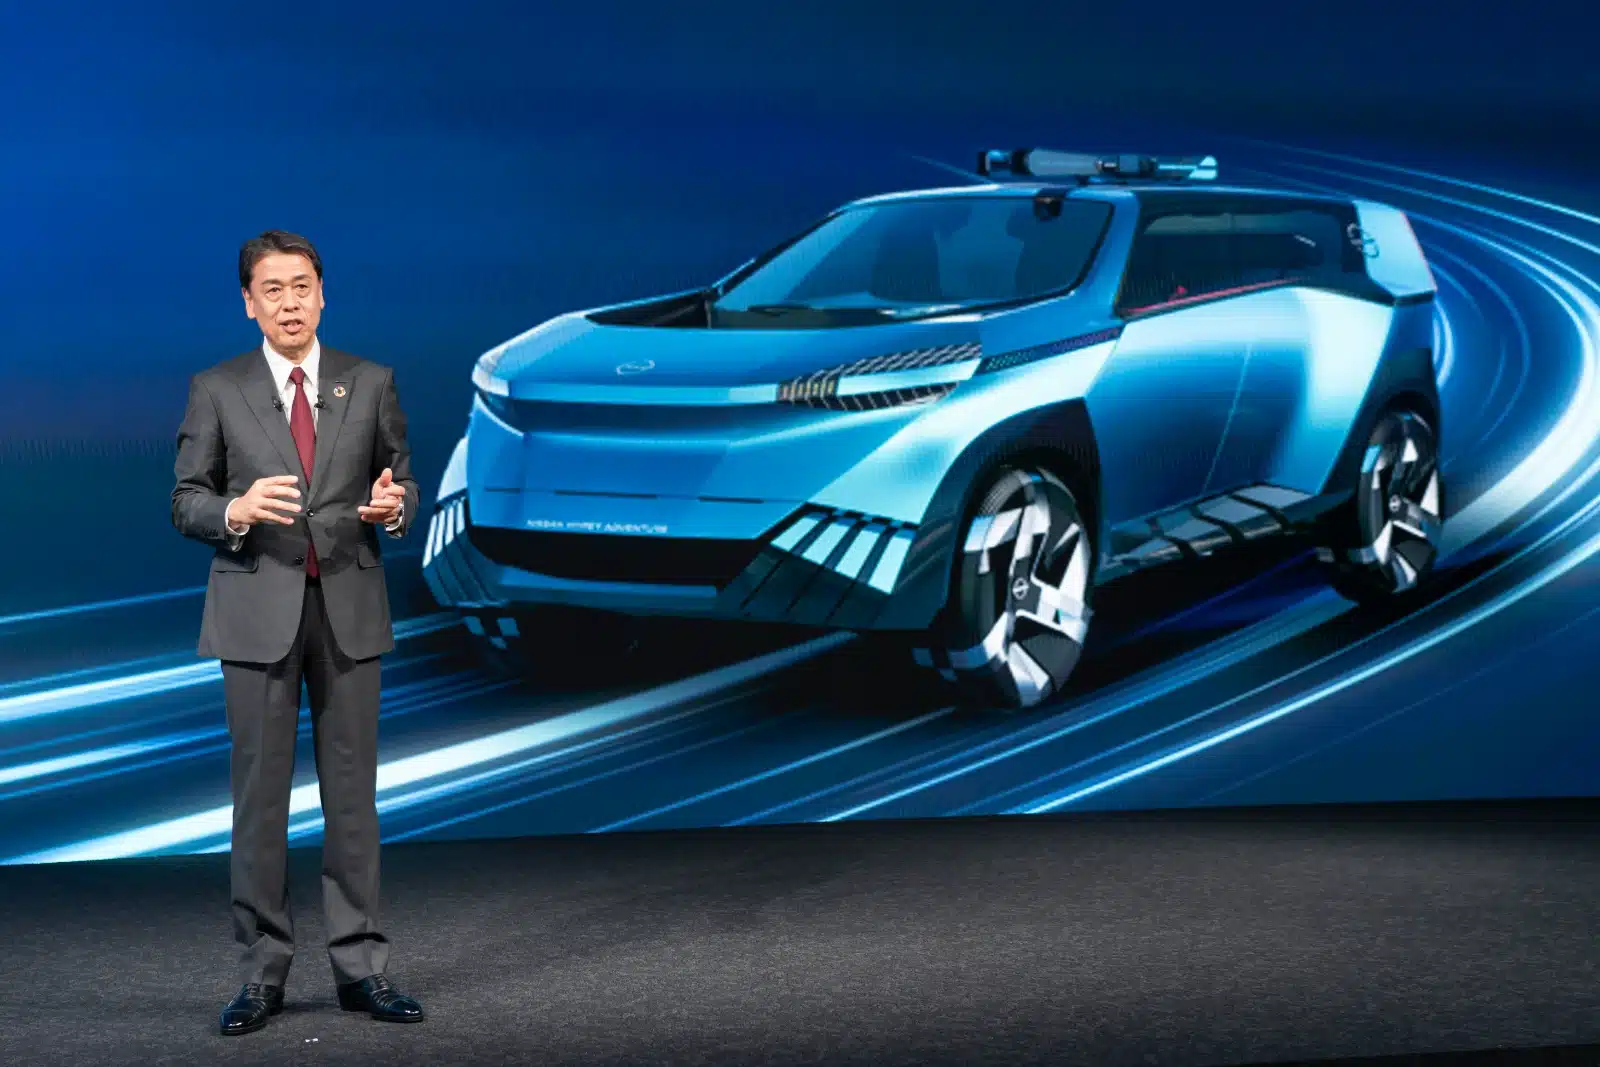 The Arc Nissan: 34 nuovi modelli elettrificati entro il 2030